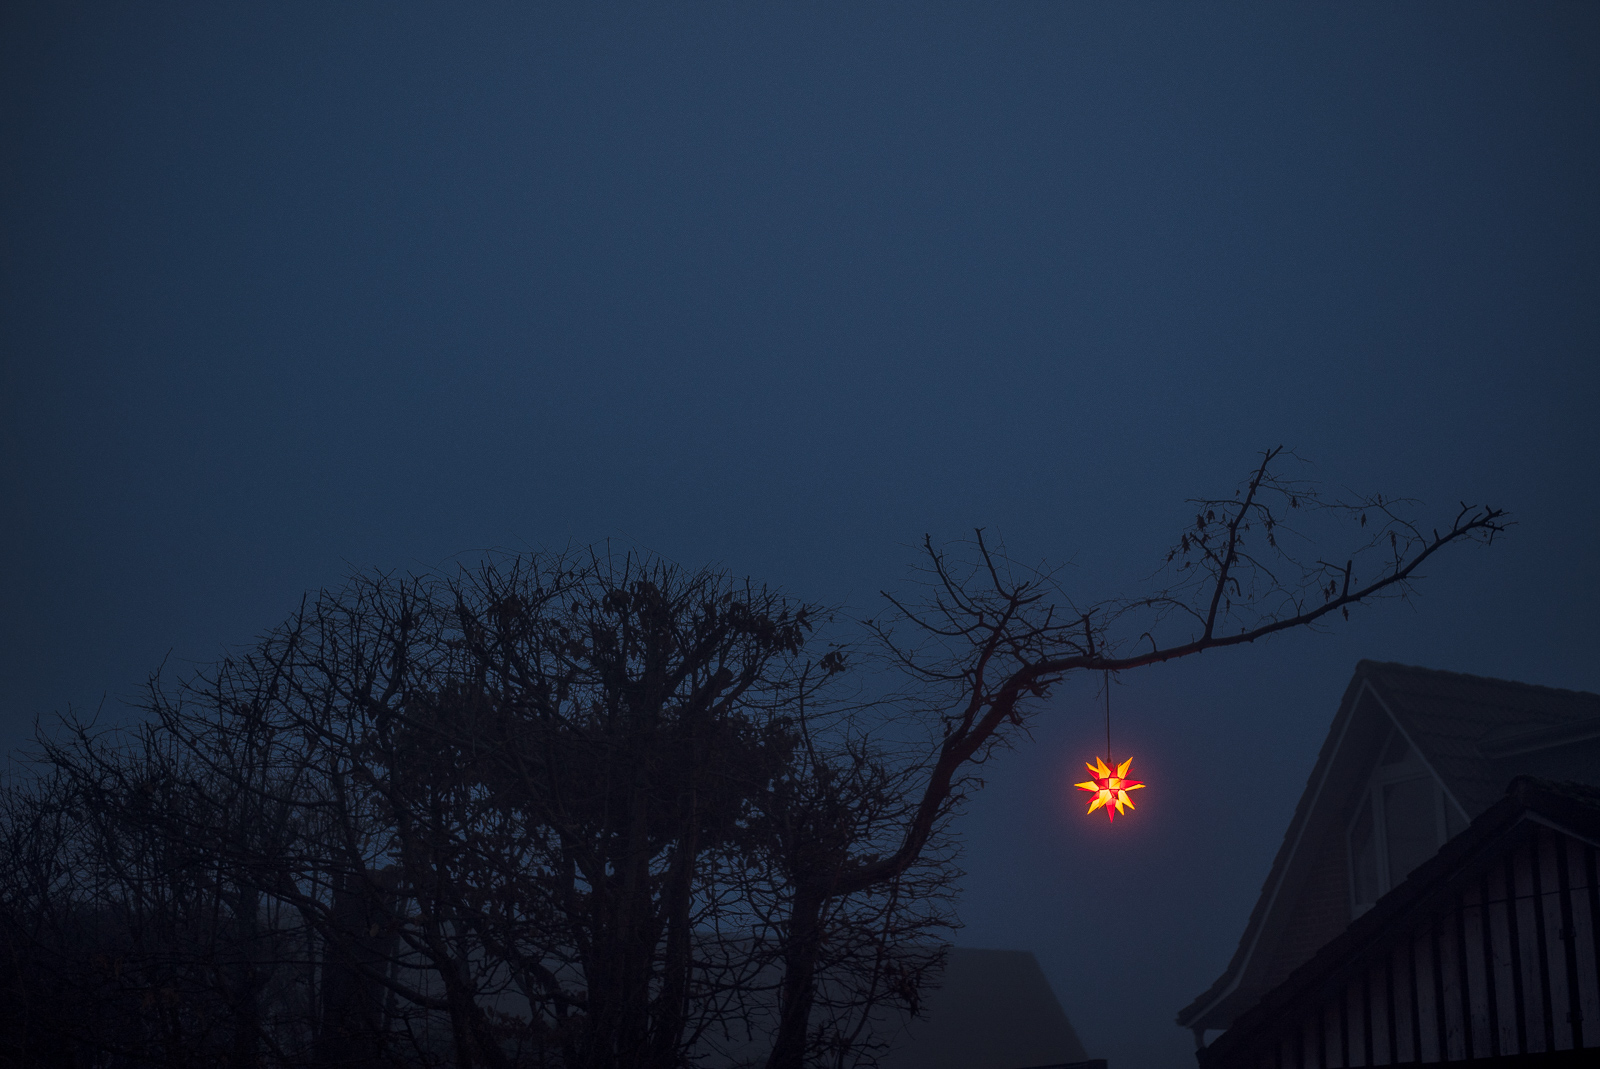 Abendlicher Nebel in blauem Dämmerlicht: Rot leuchtender Weihnachtsstern an einem Baum